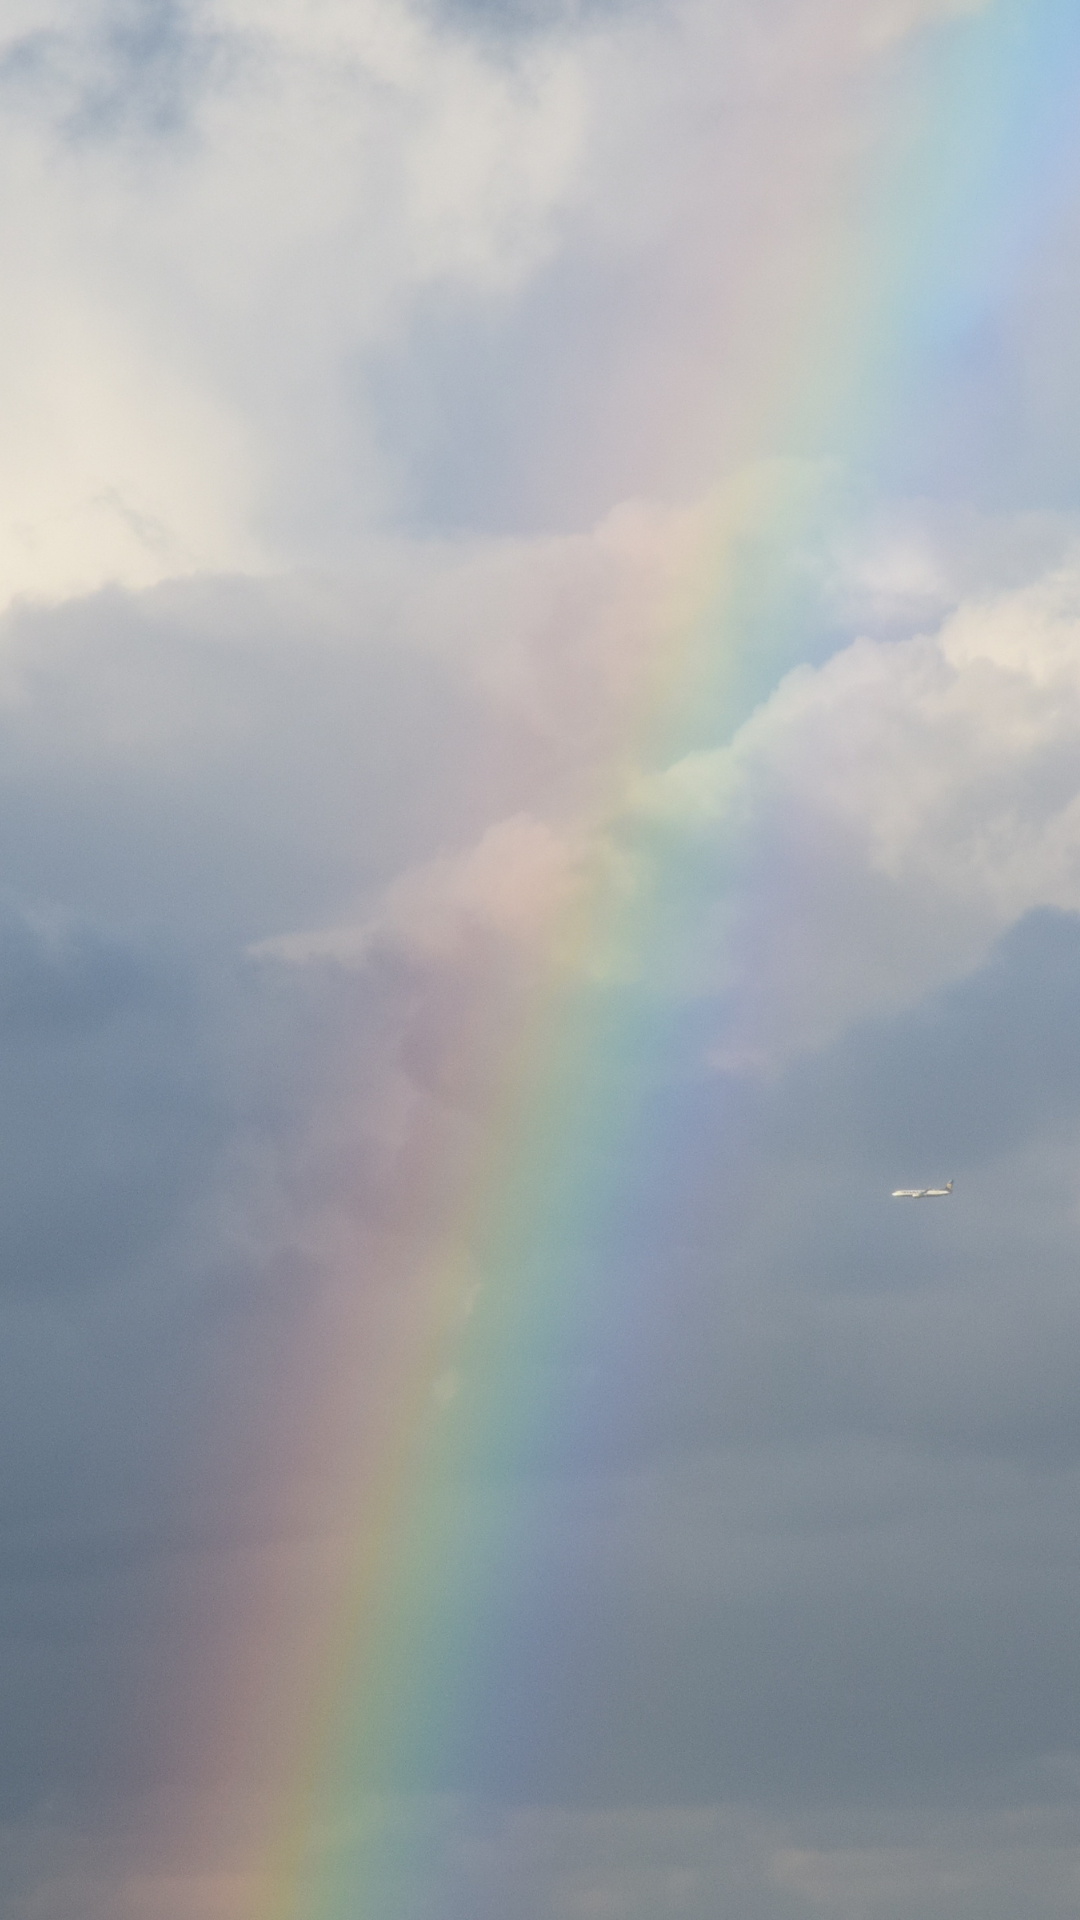 Rainbow against cloudy sky